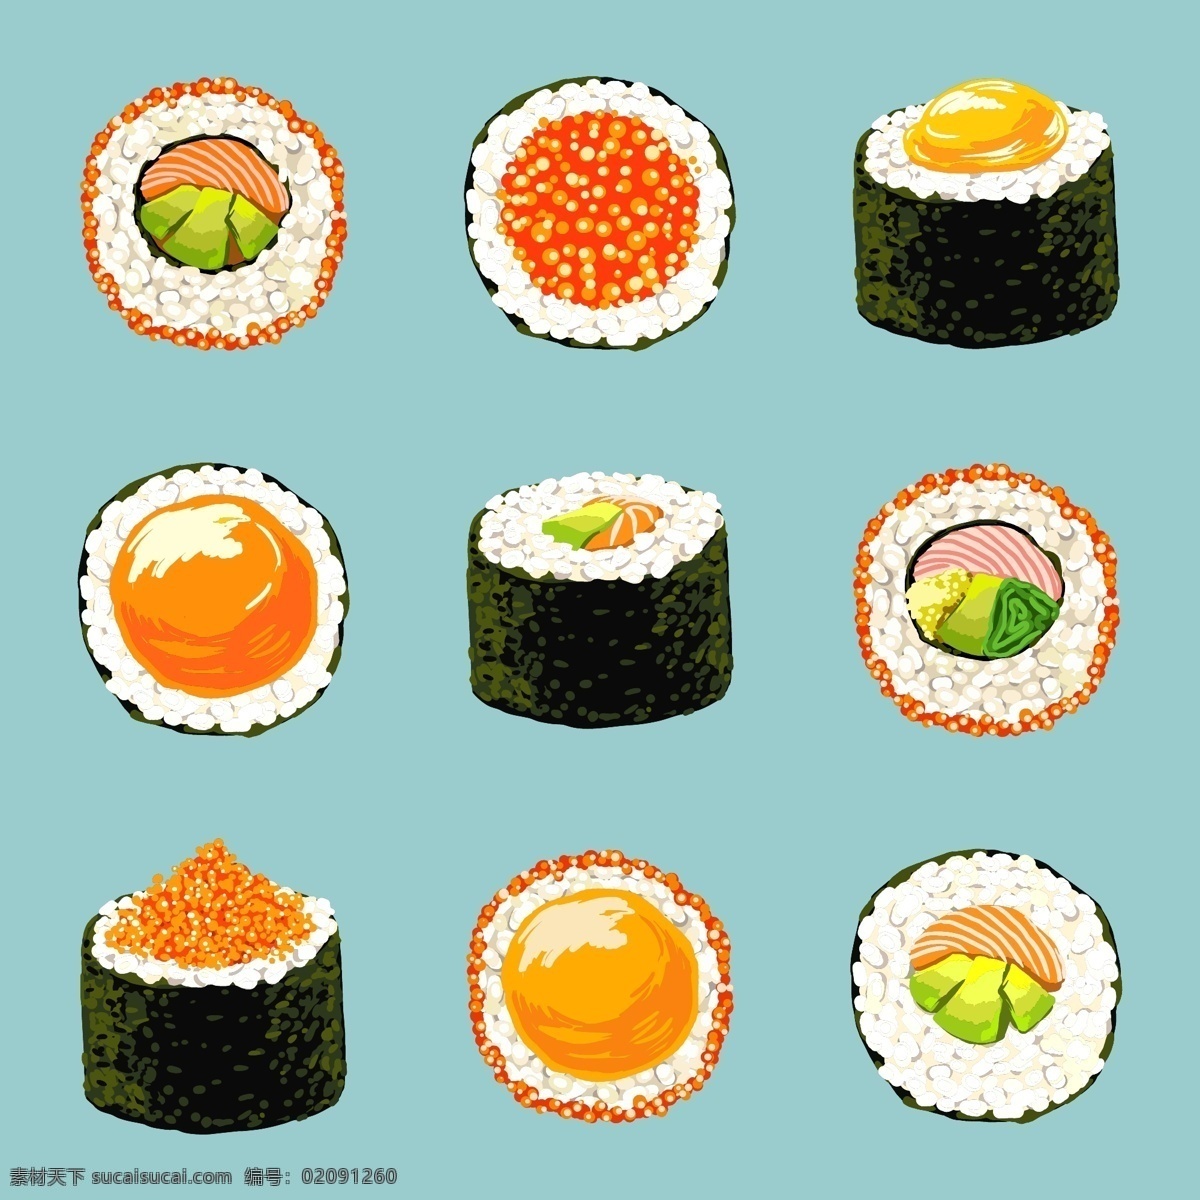 鱼子 料理 食物 寿司 矢量图 大米 珍珠米 矢量素材 源文件 免费素材 白米